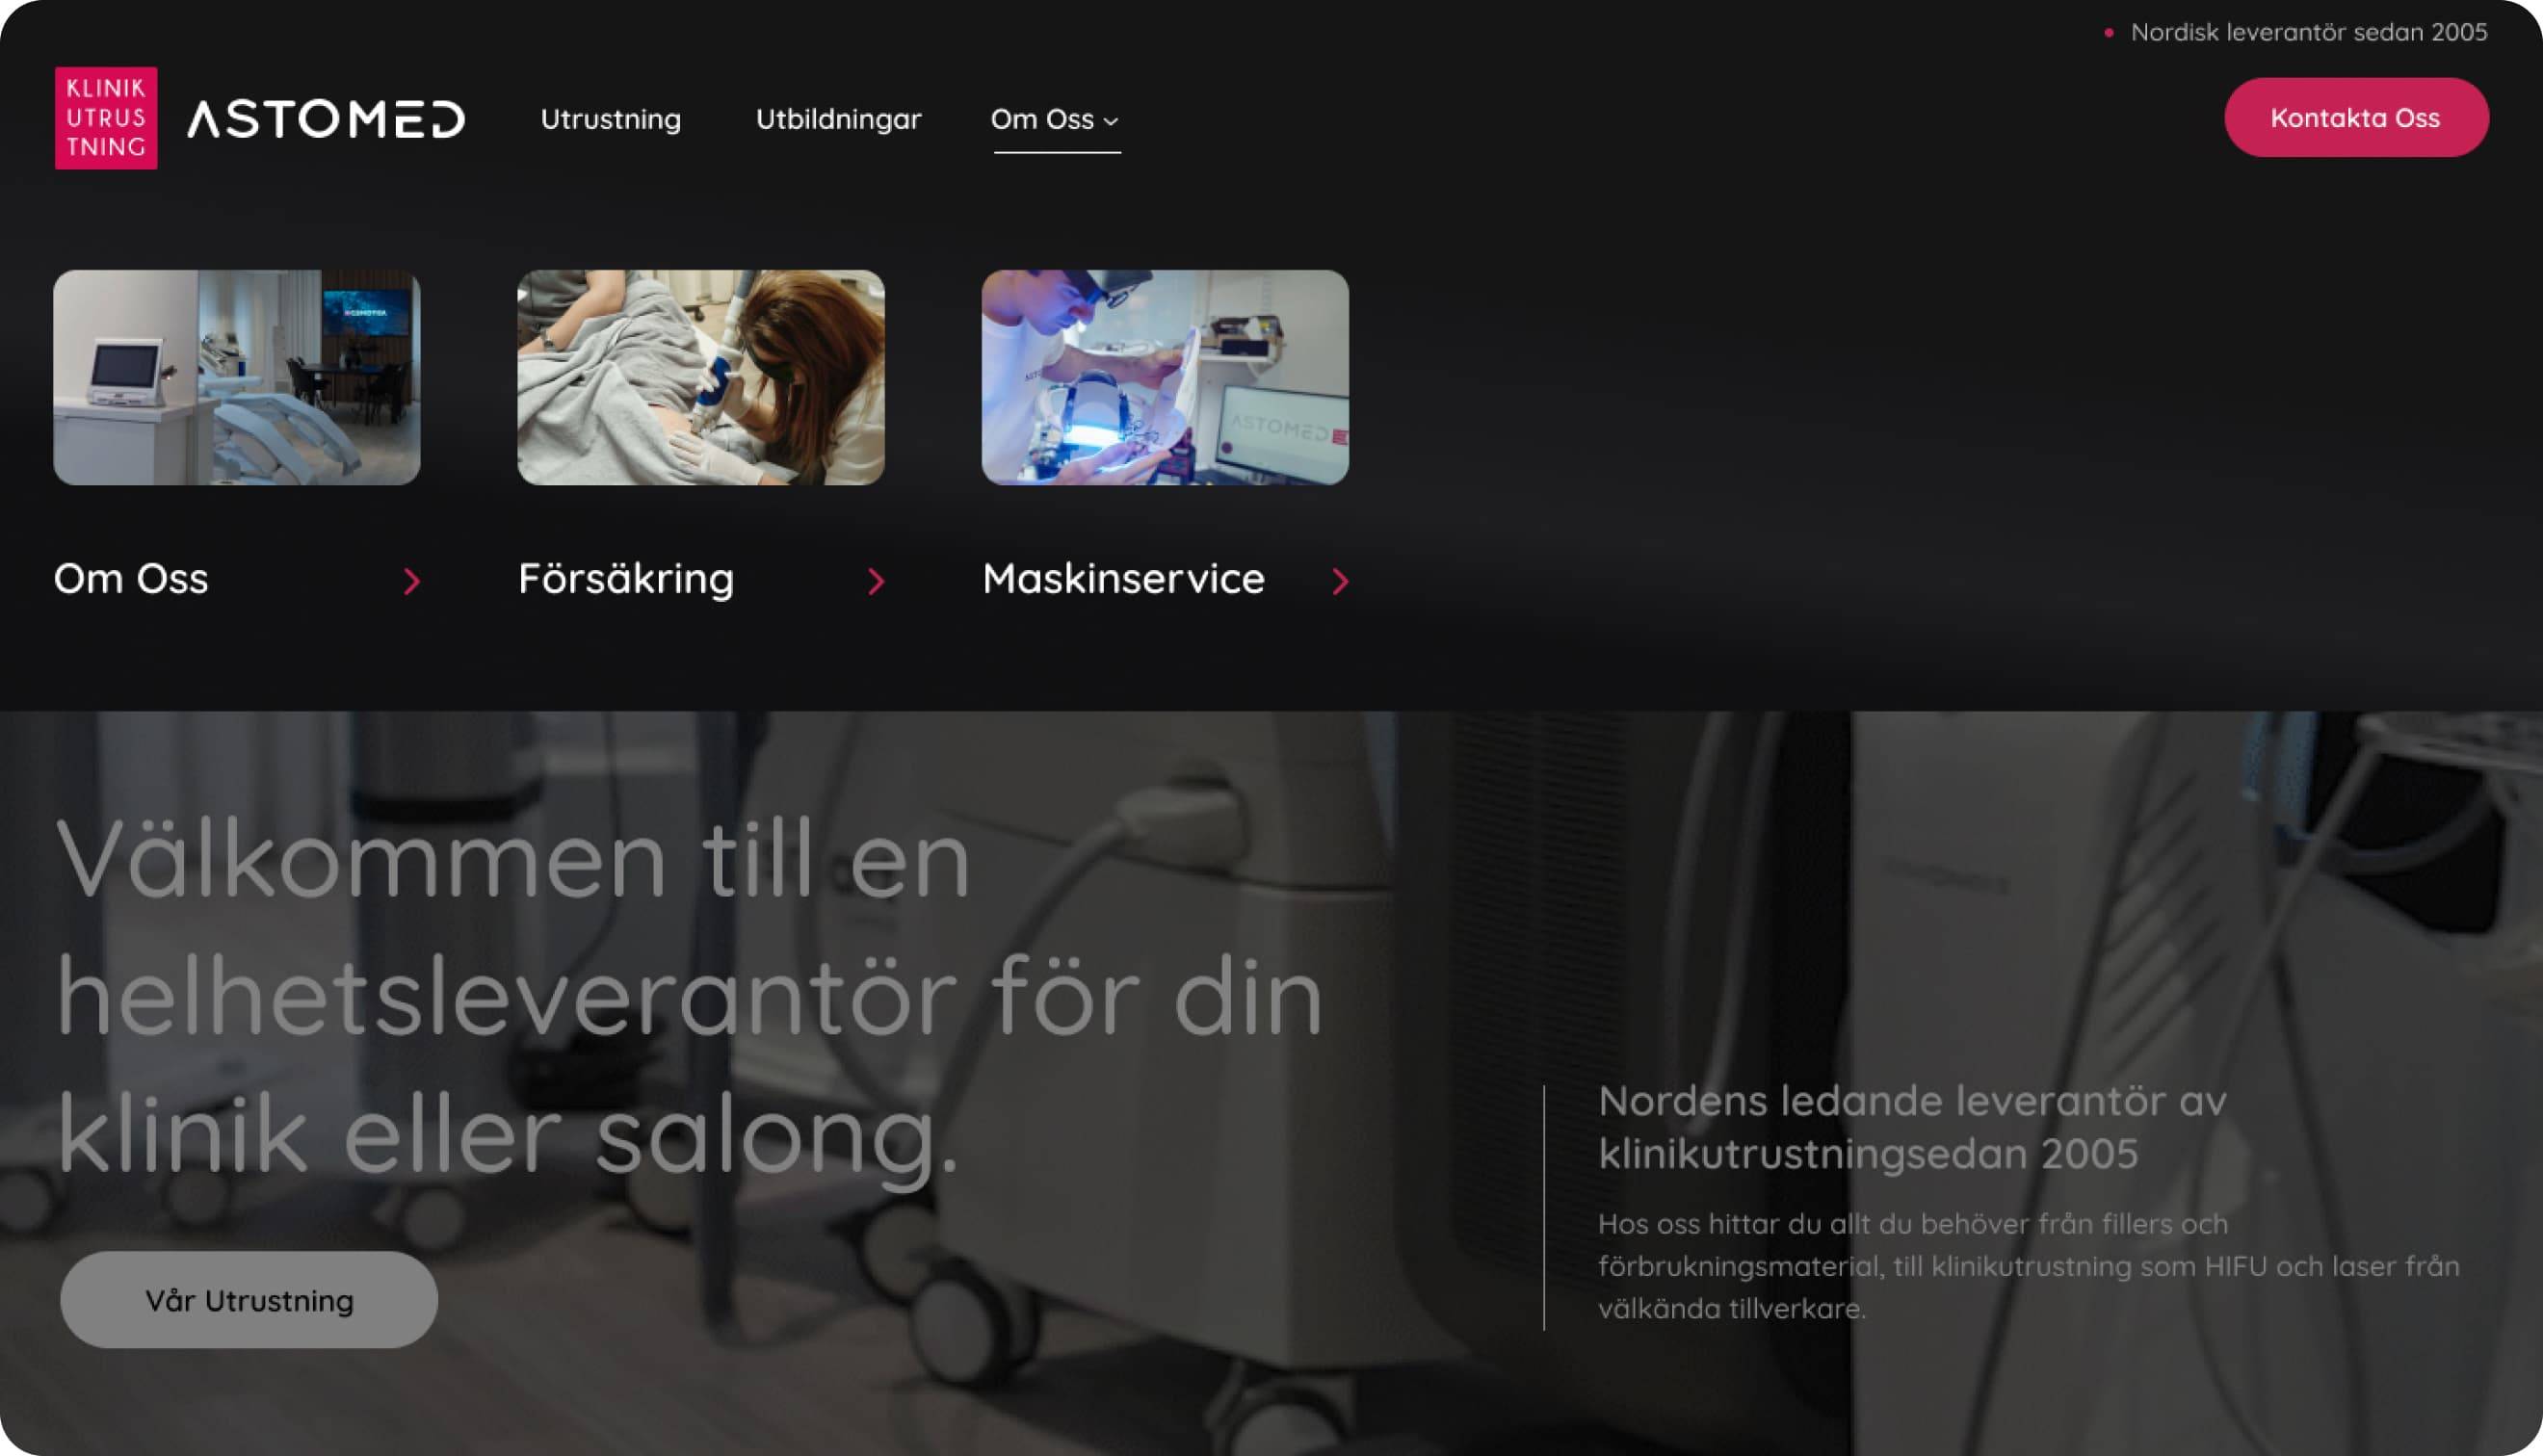 klinikutrustning website design